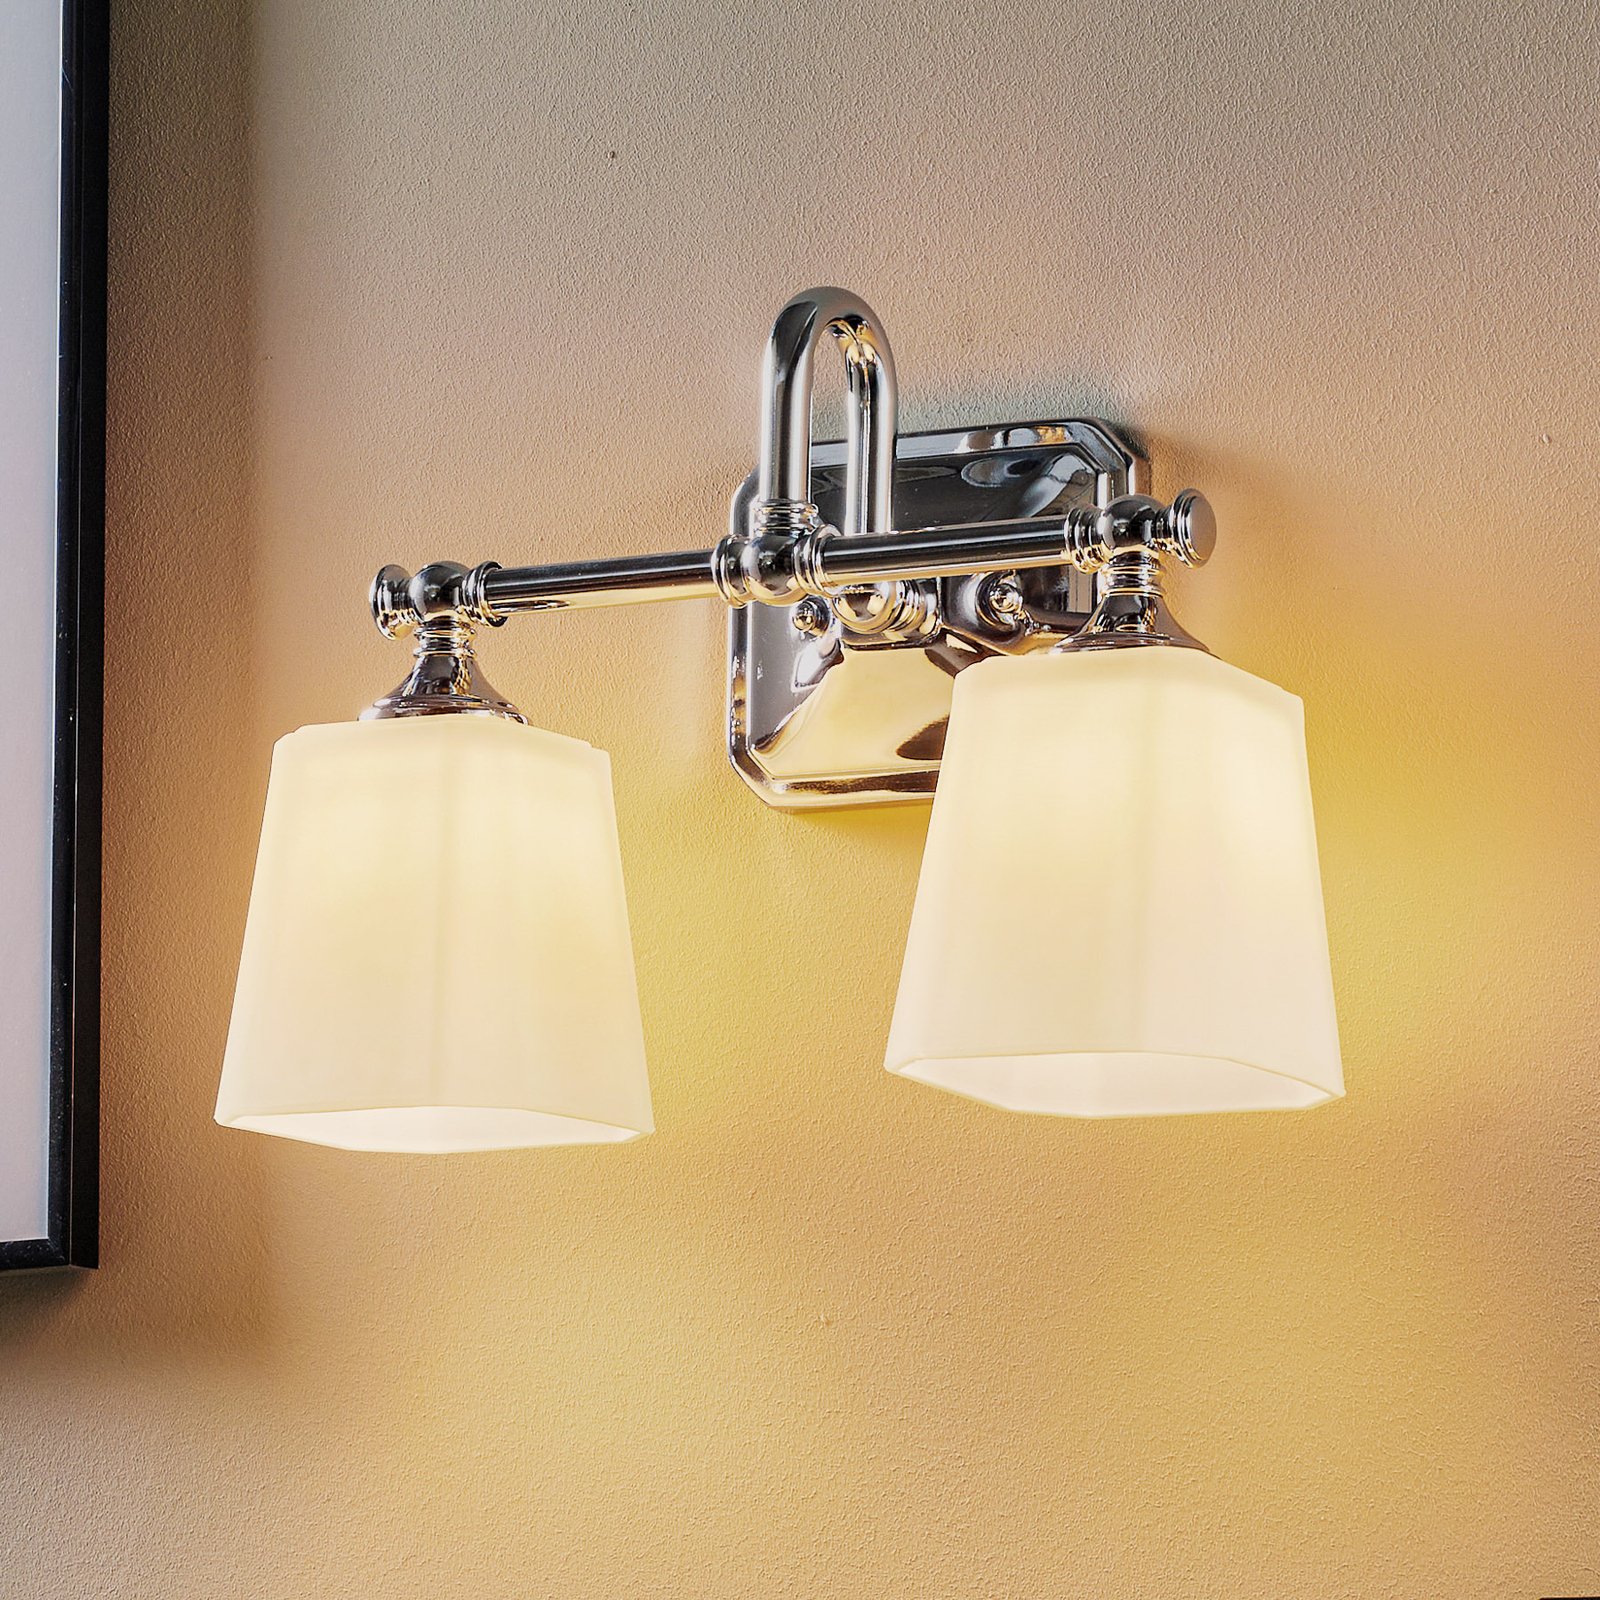 Concord - badkamerspiegel lamp met twee lampjes